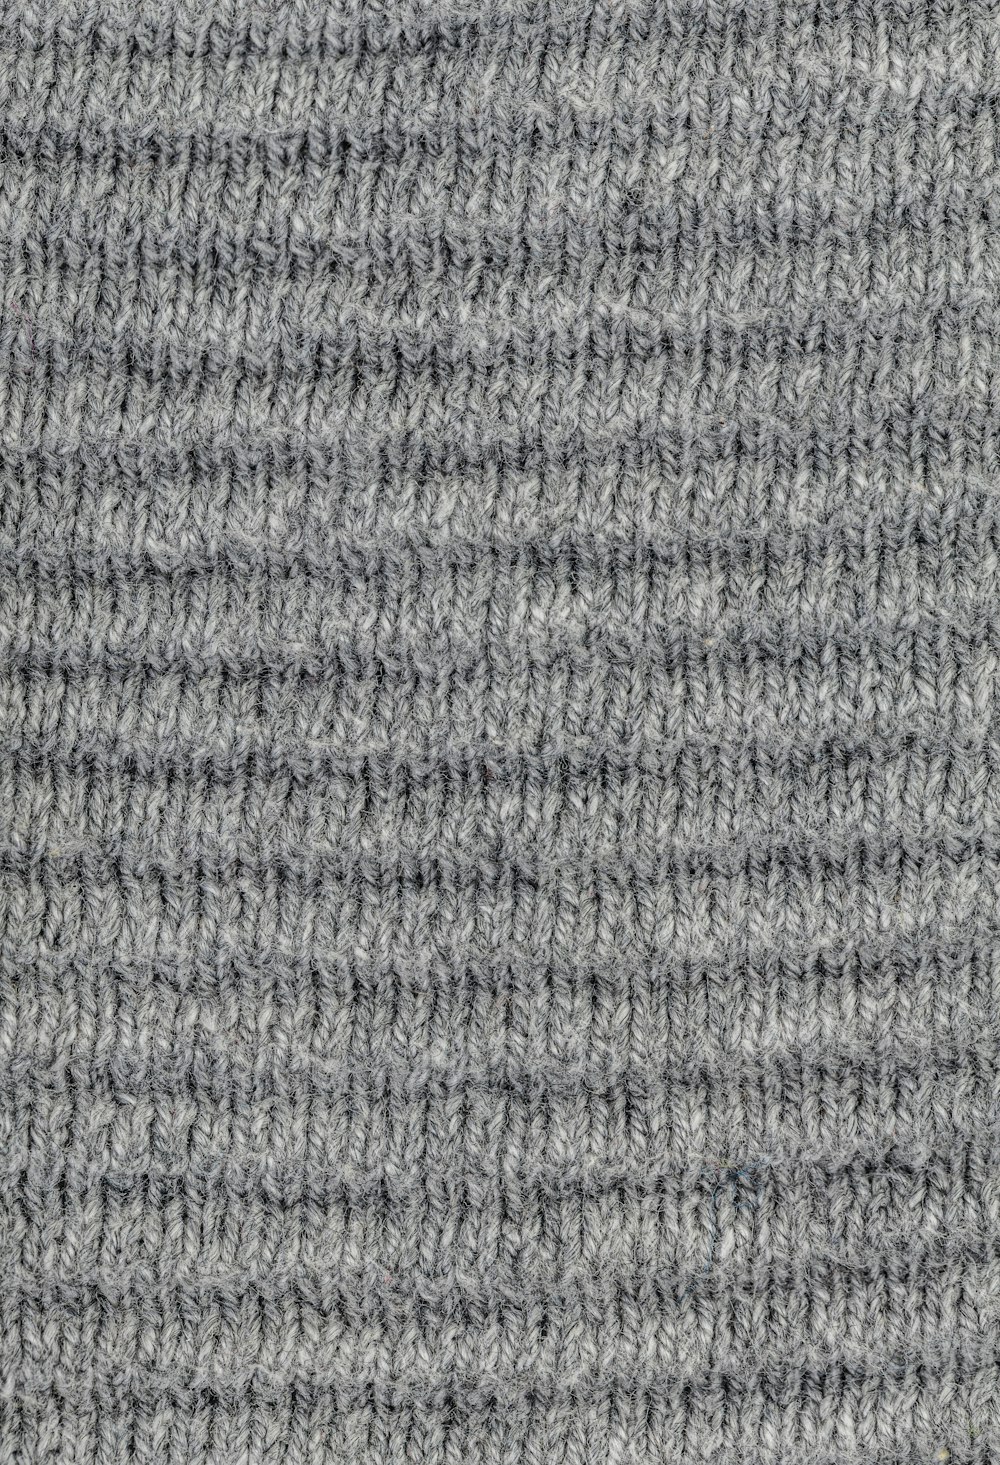 um close up de um material de malha cinza